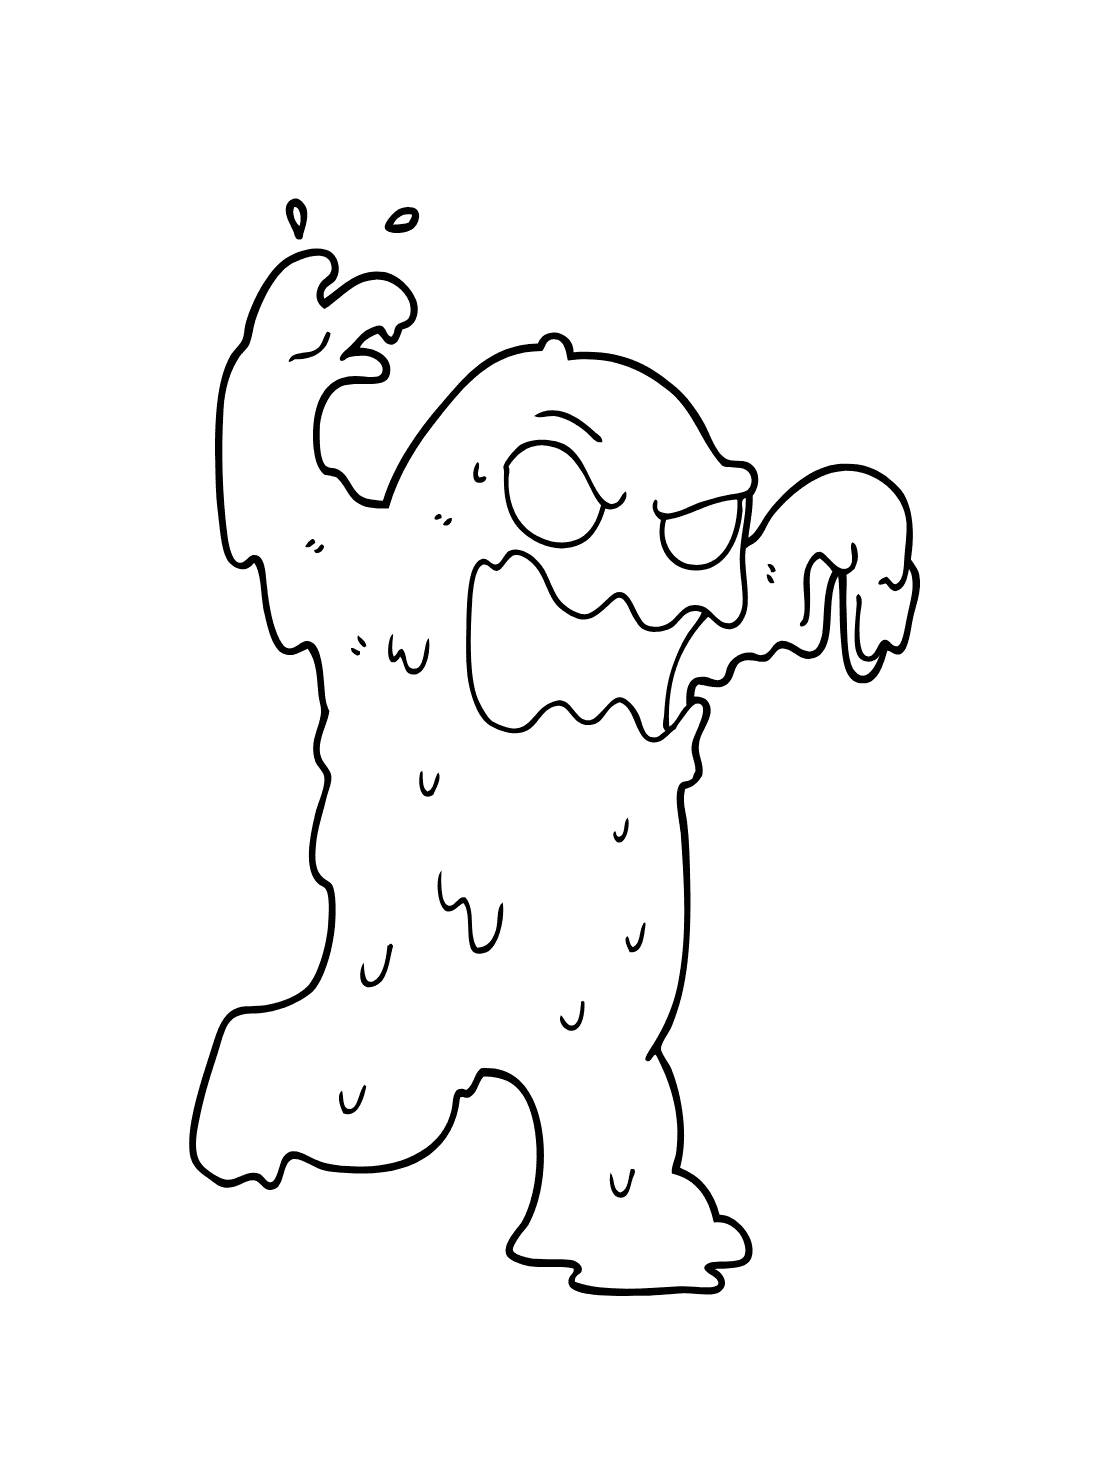 Drawing cartoon slime monster